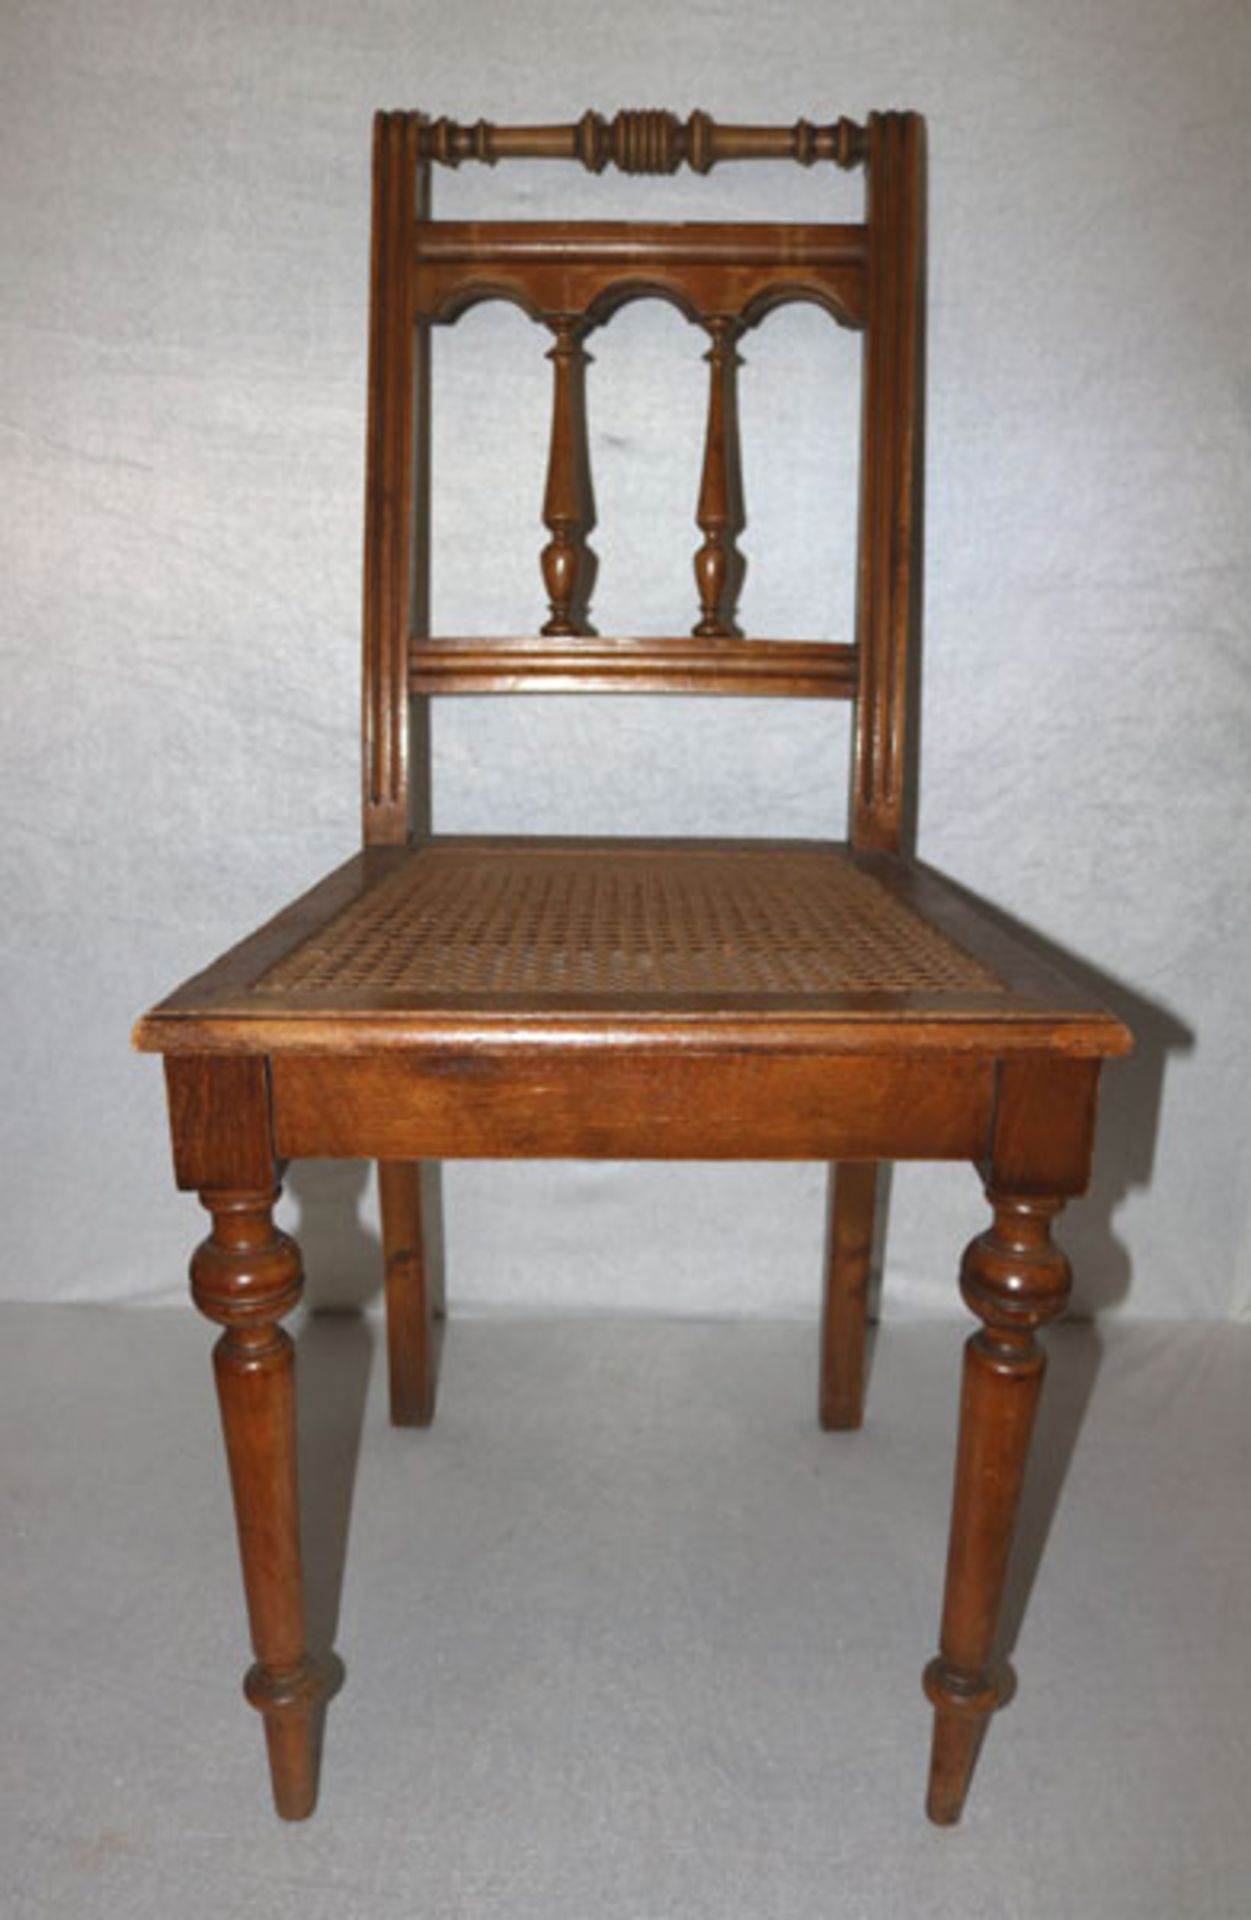 2 Holzstühle, teils gedrechselt, Sitz mit Flechteinlagen, teils beschädigt, H 94 cm, B 45 cm, T 41